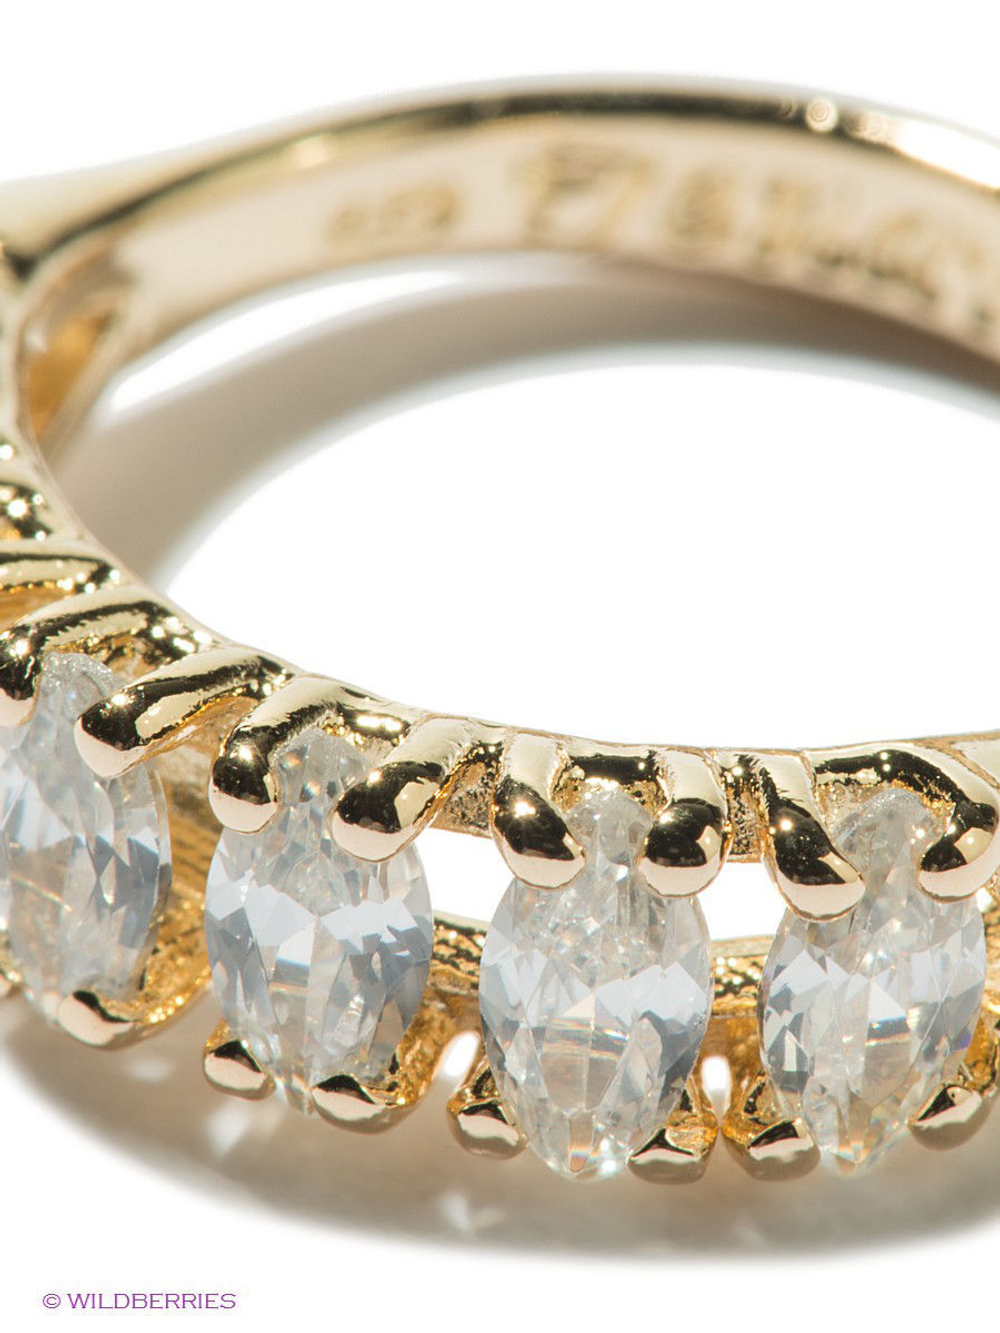 "Каритера" кольцо в золотом покрытии из коллекции "Runway" от Jenavi